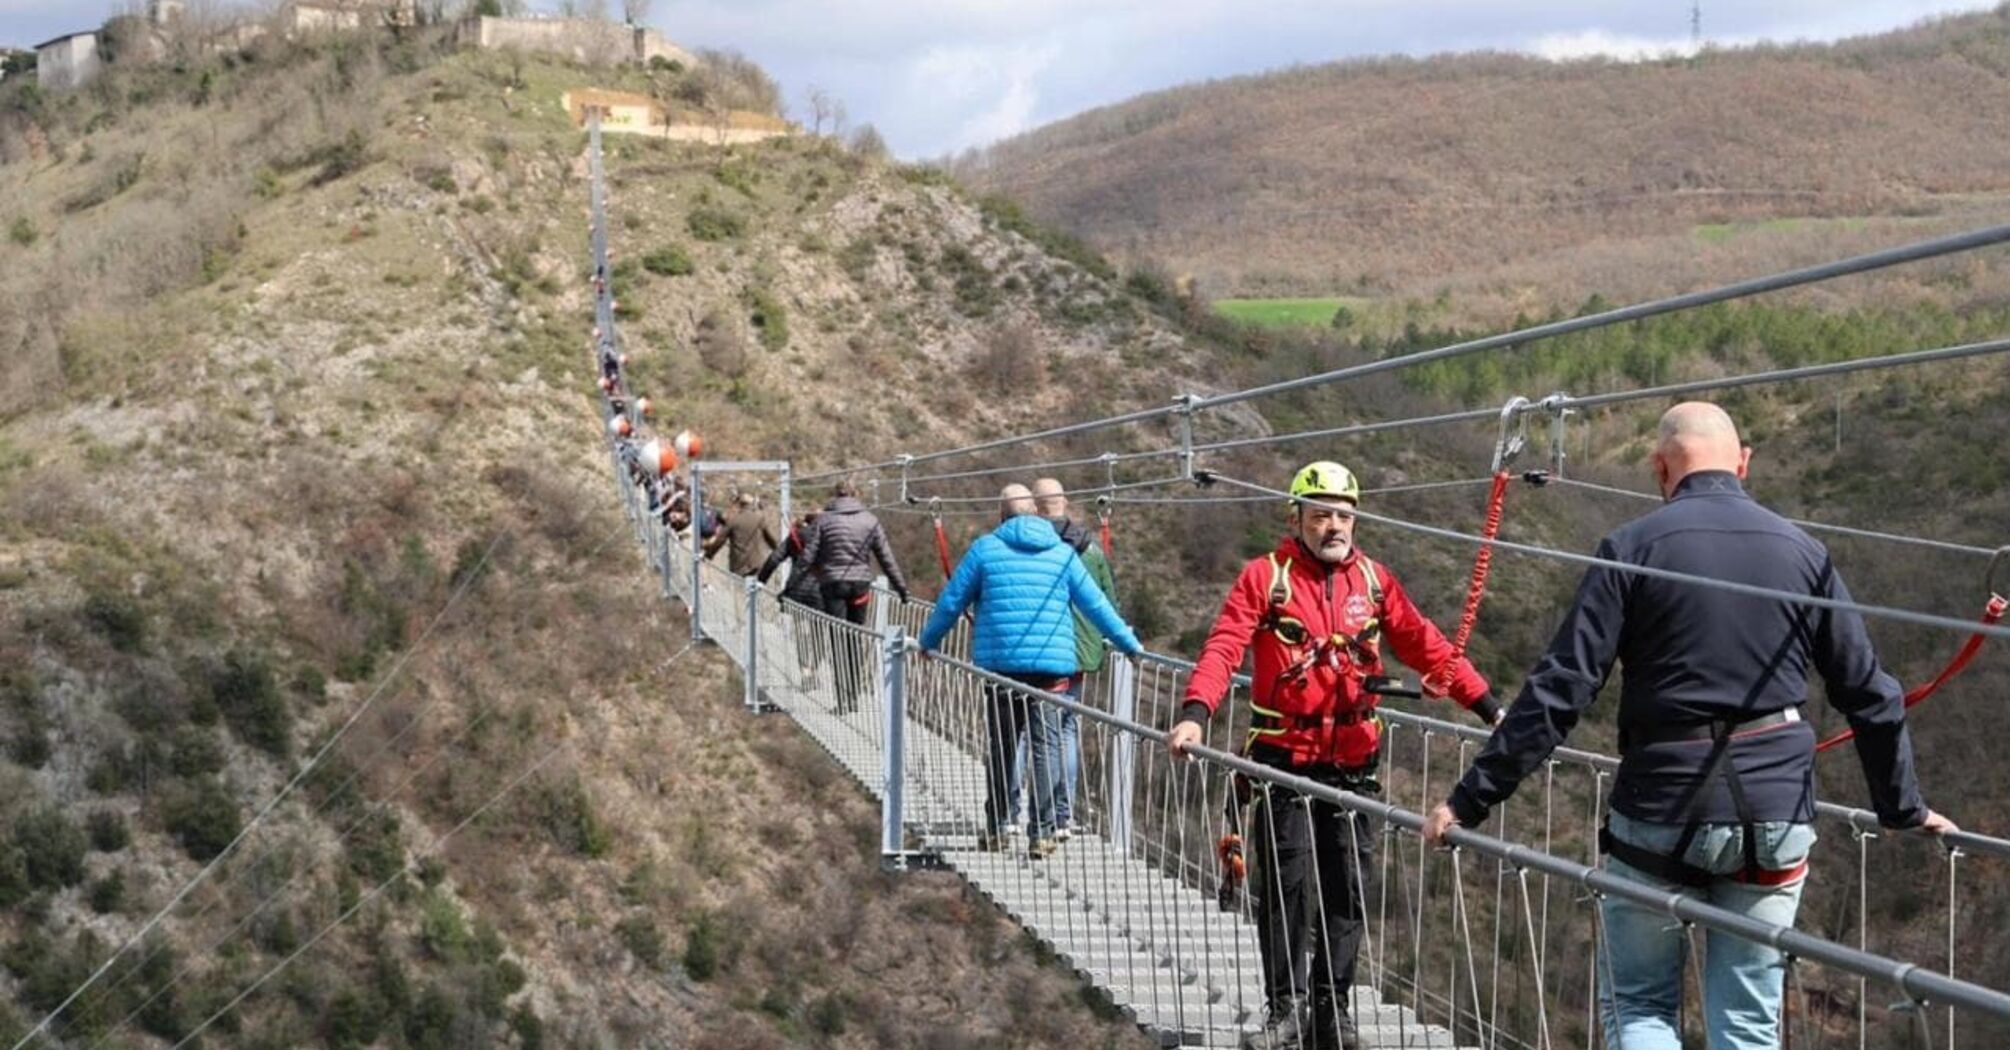 Europe's highest suspension bridge opened in Italy